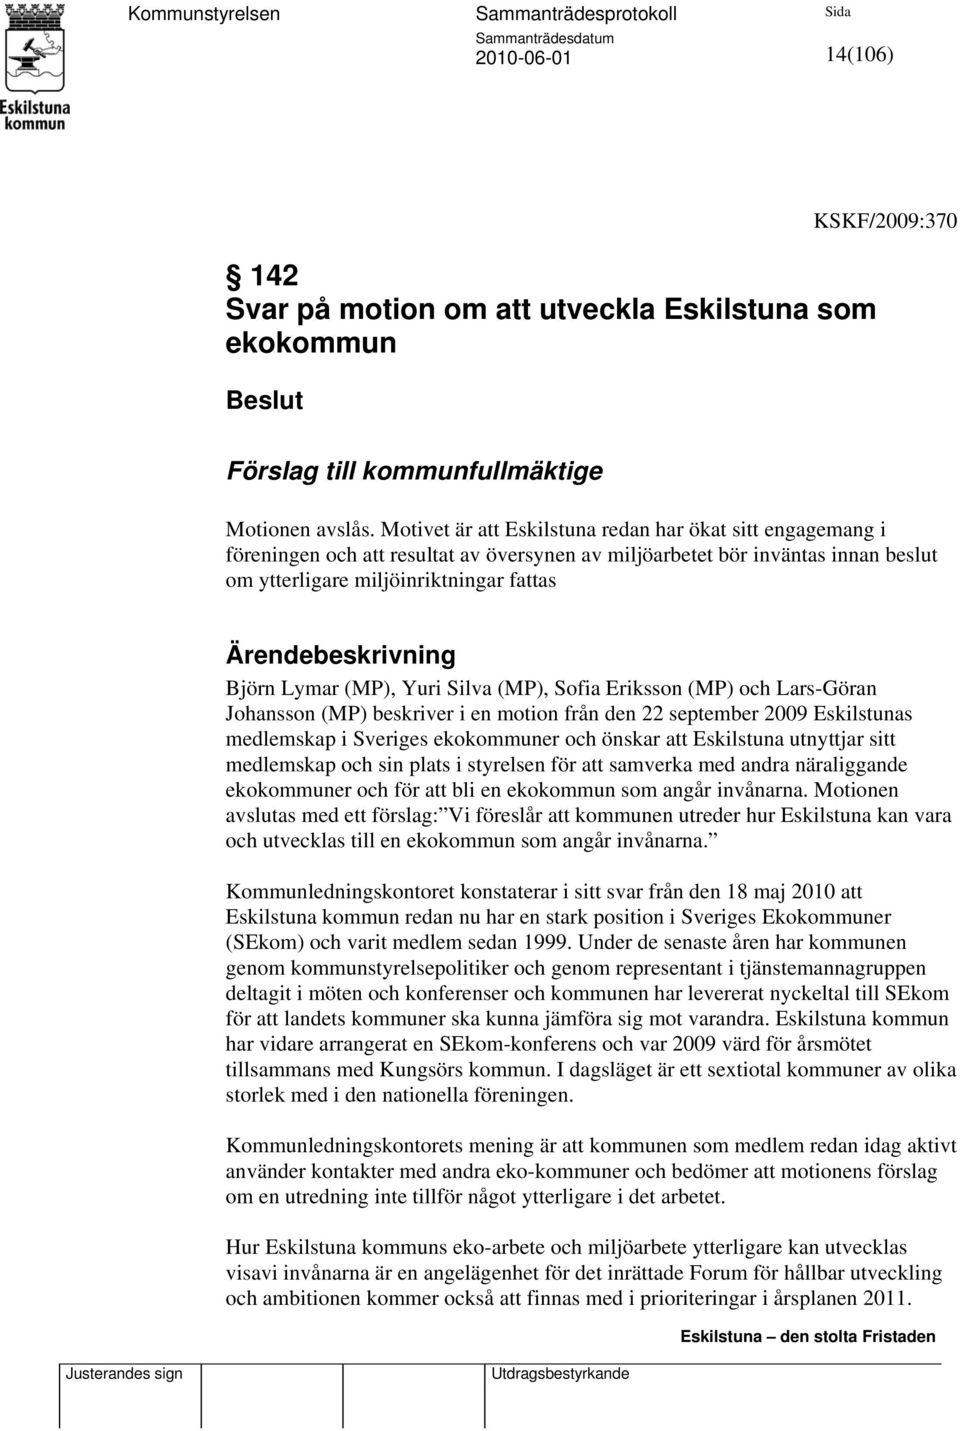 Björn Lymar (MP), Yuri Silva (MP), Sofia Eriksson (MP) och Lars-Göran Johansson (MP) beskriver i en motion från den 22 september 2009 Eskilstunas medlemskap i Sveriges ekokommuner och önskar att